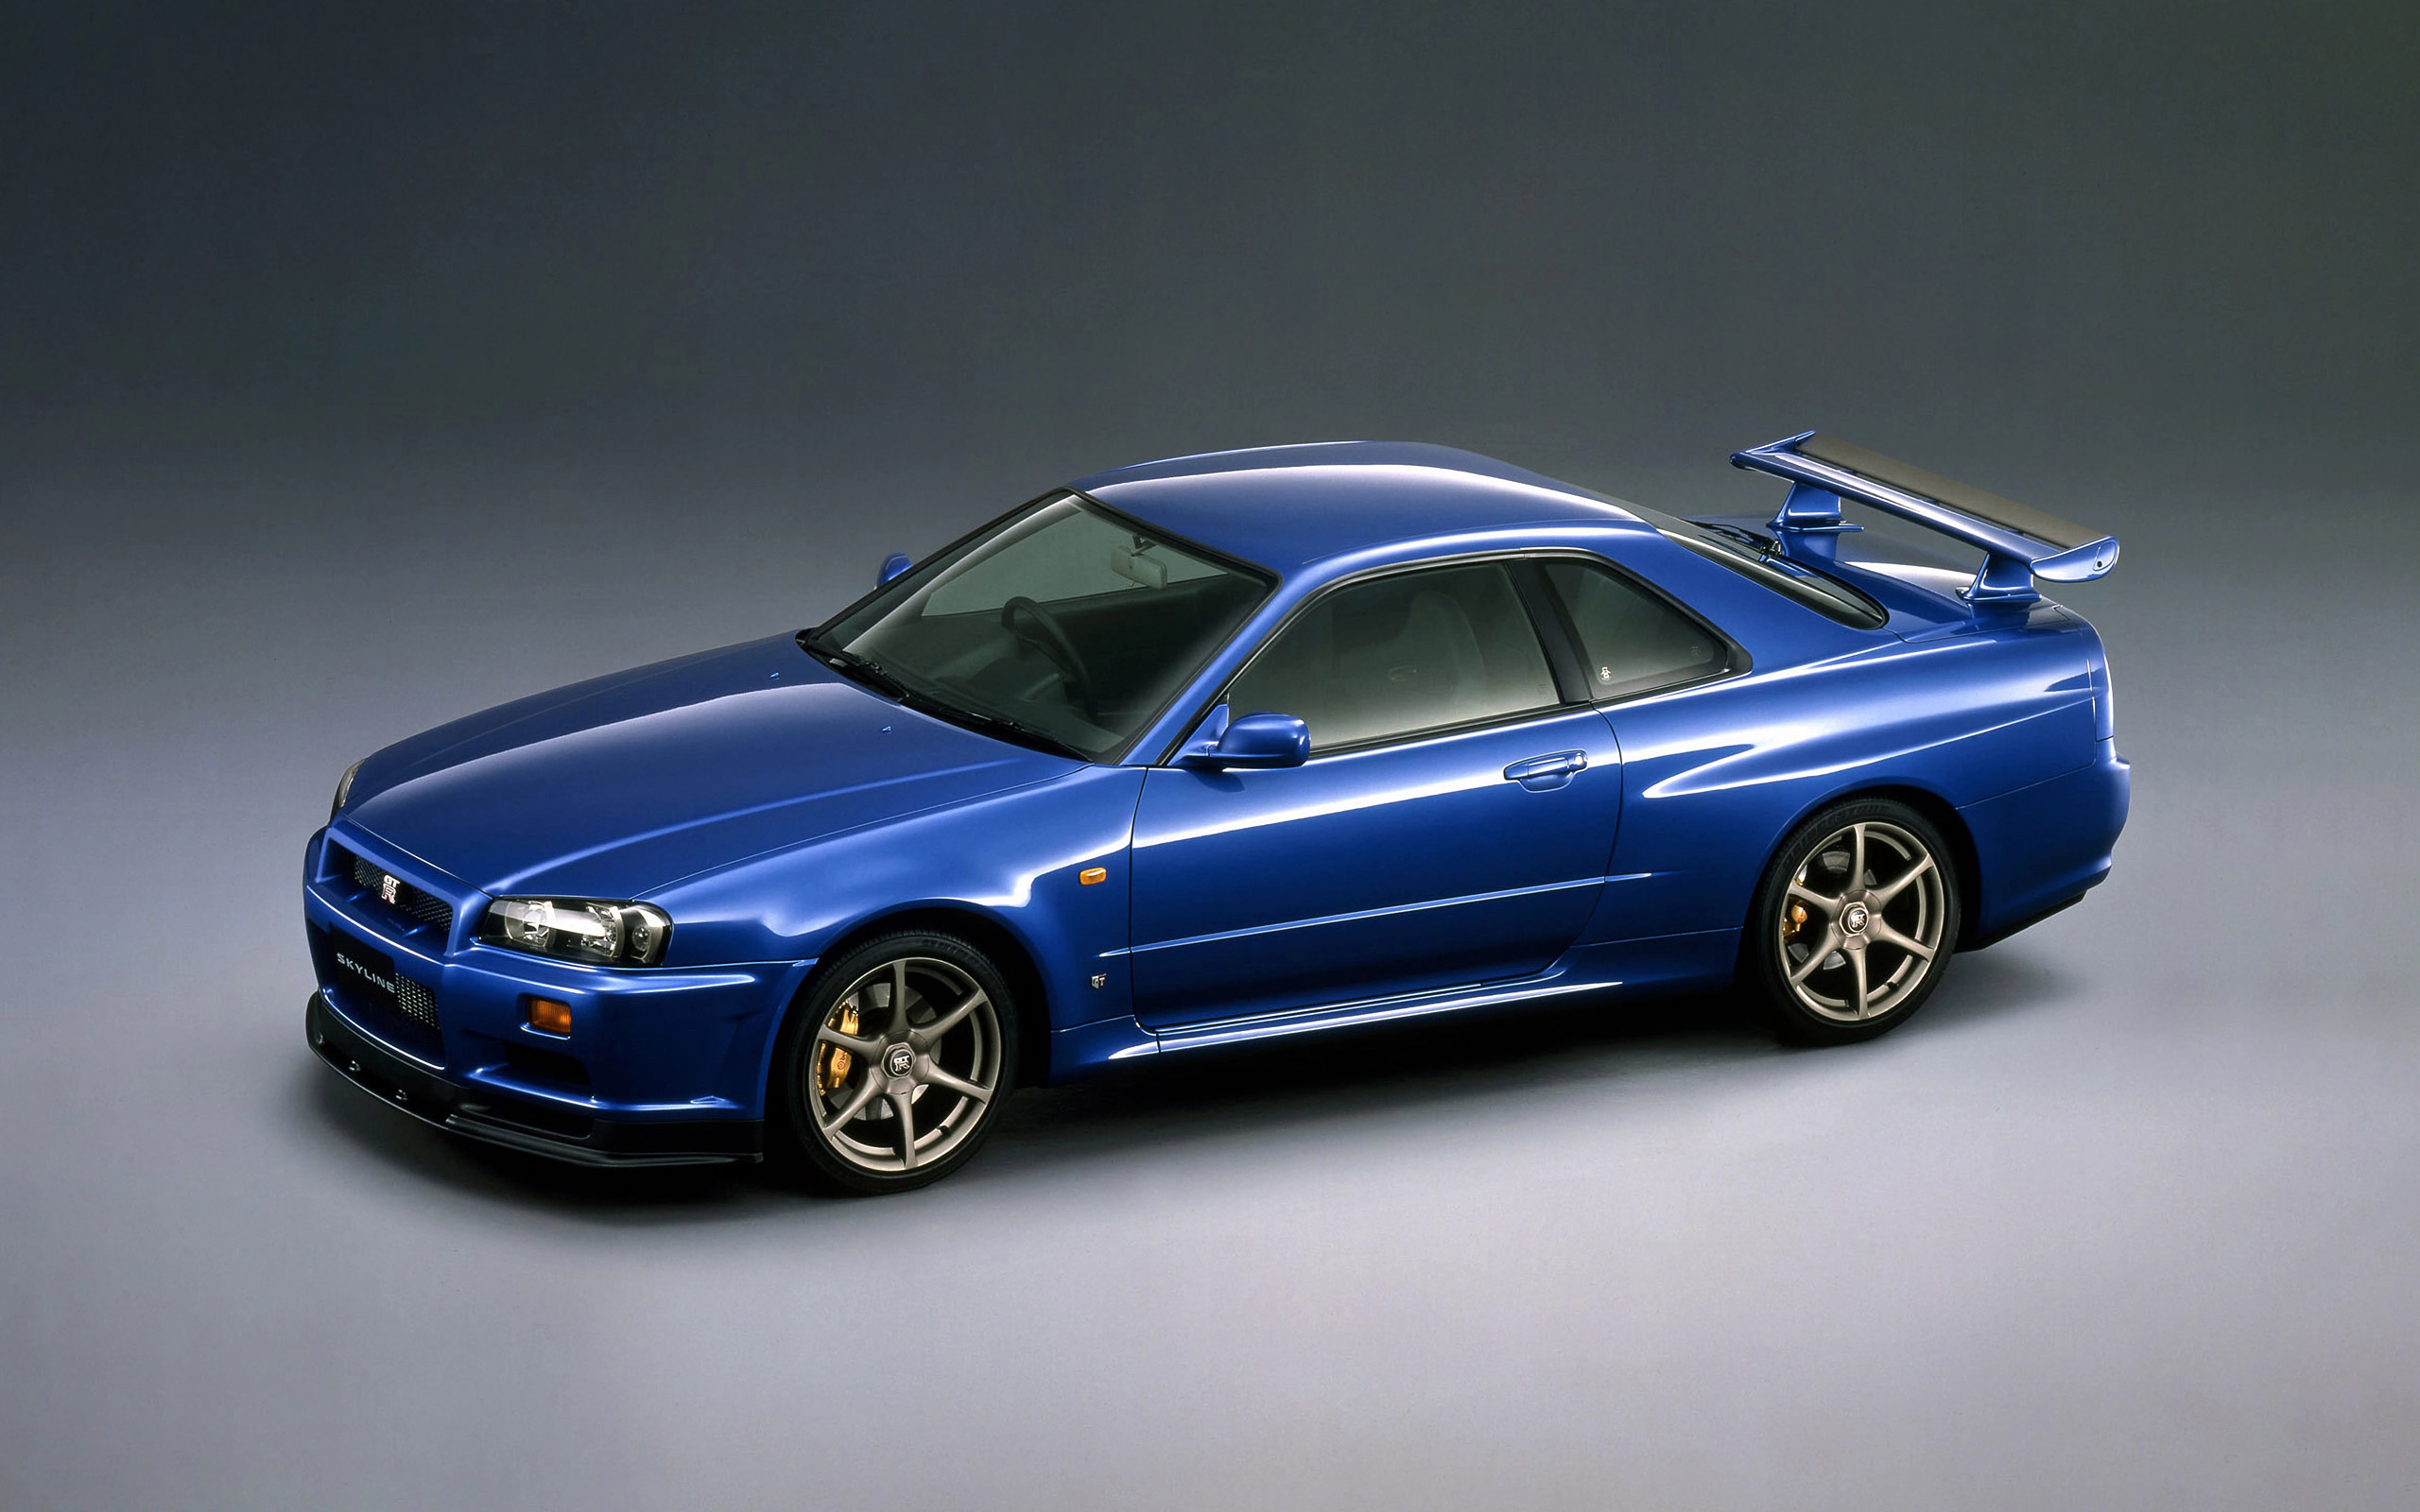  1999 Nissan Skyline GT-R V-spec Wallpaper.